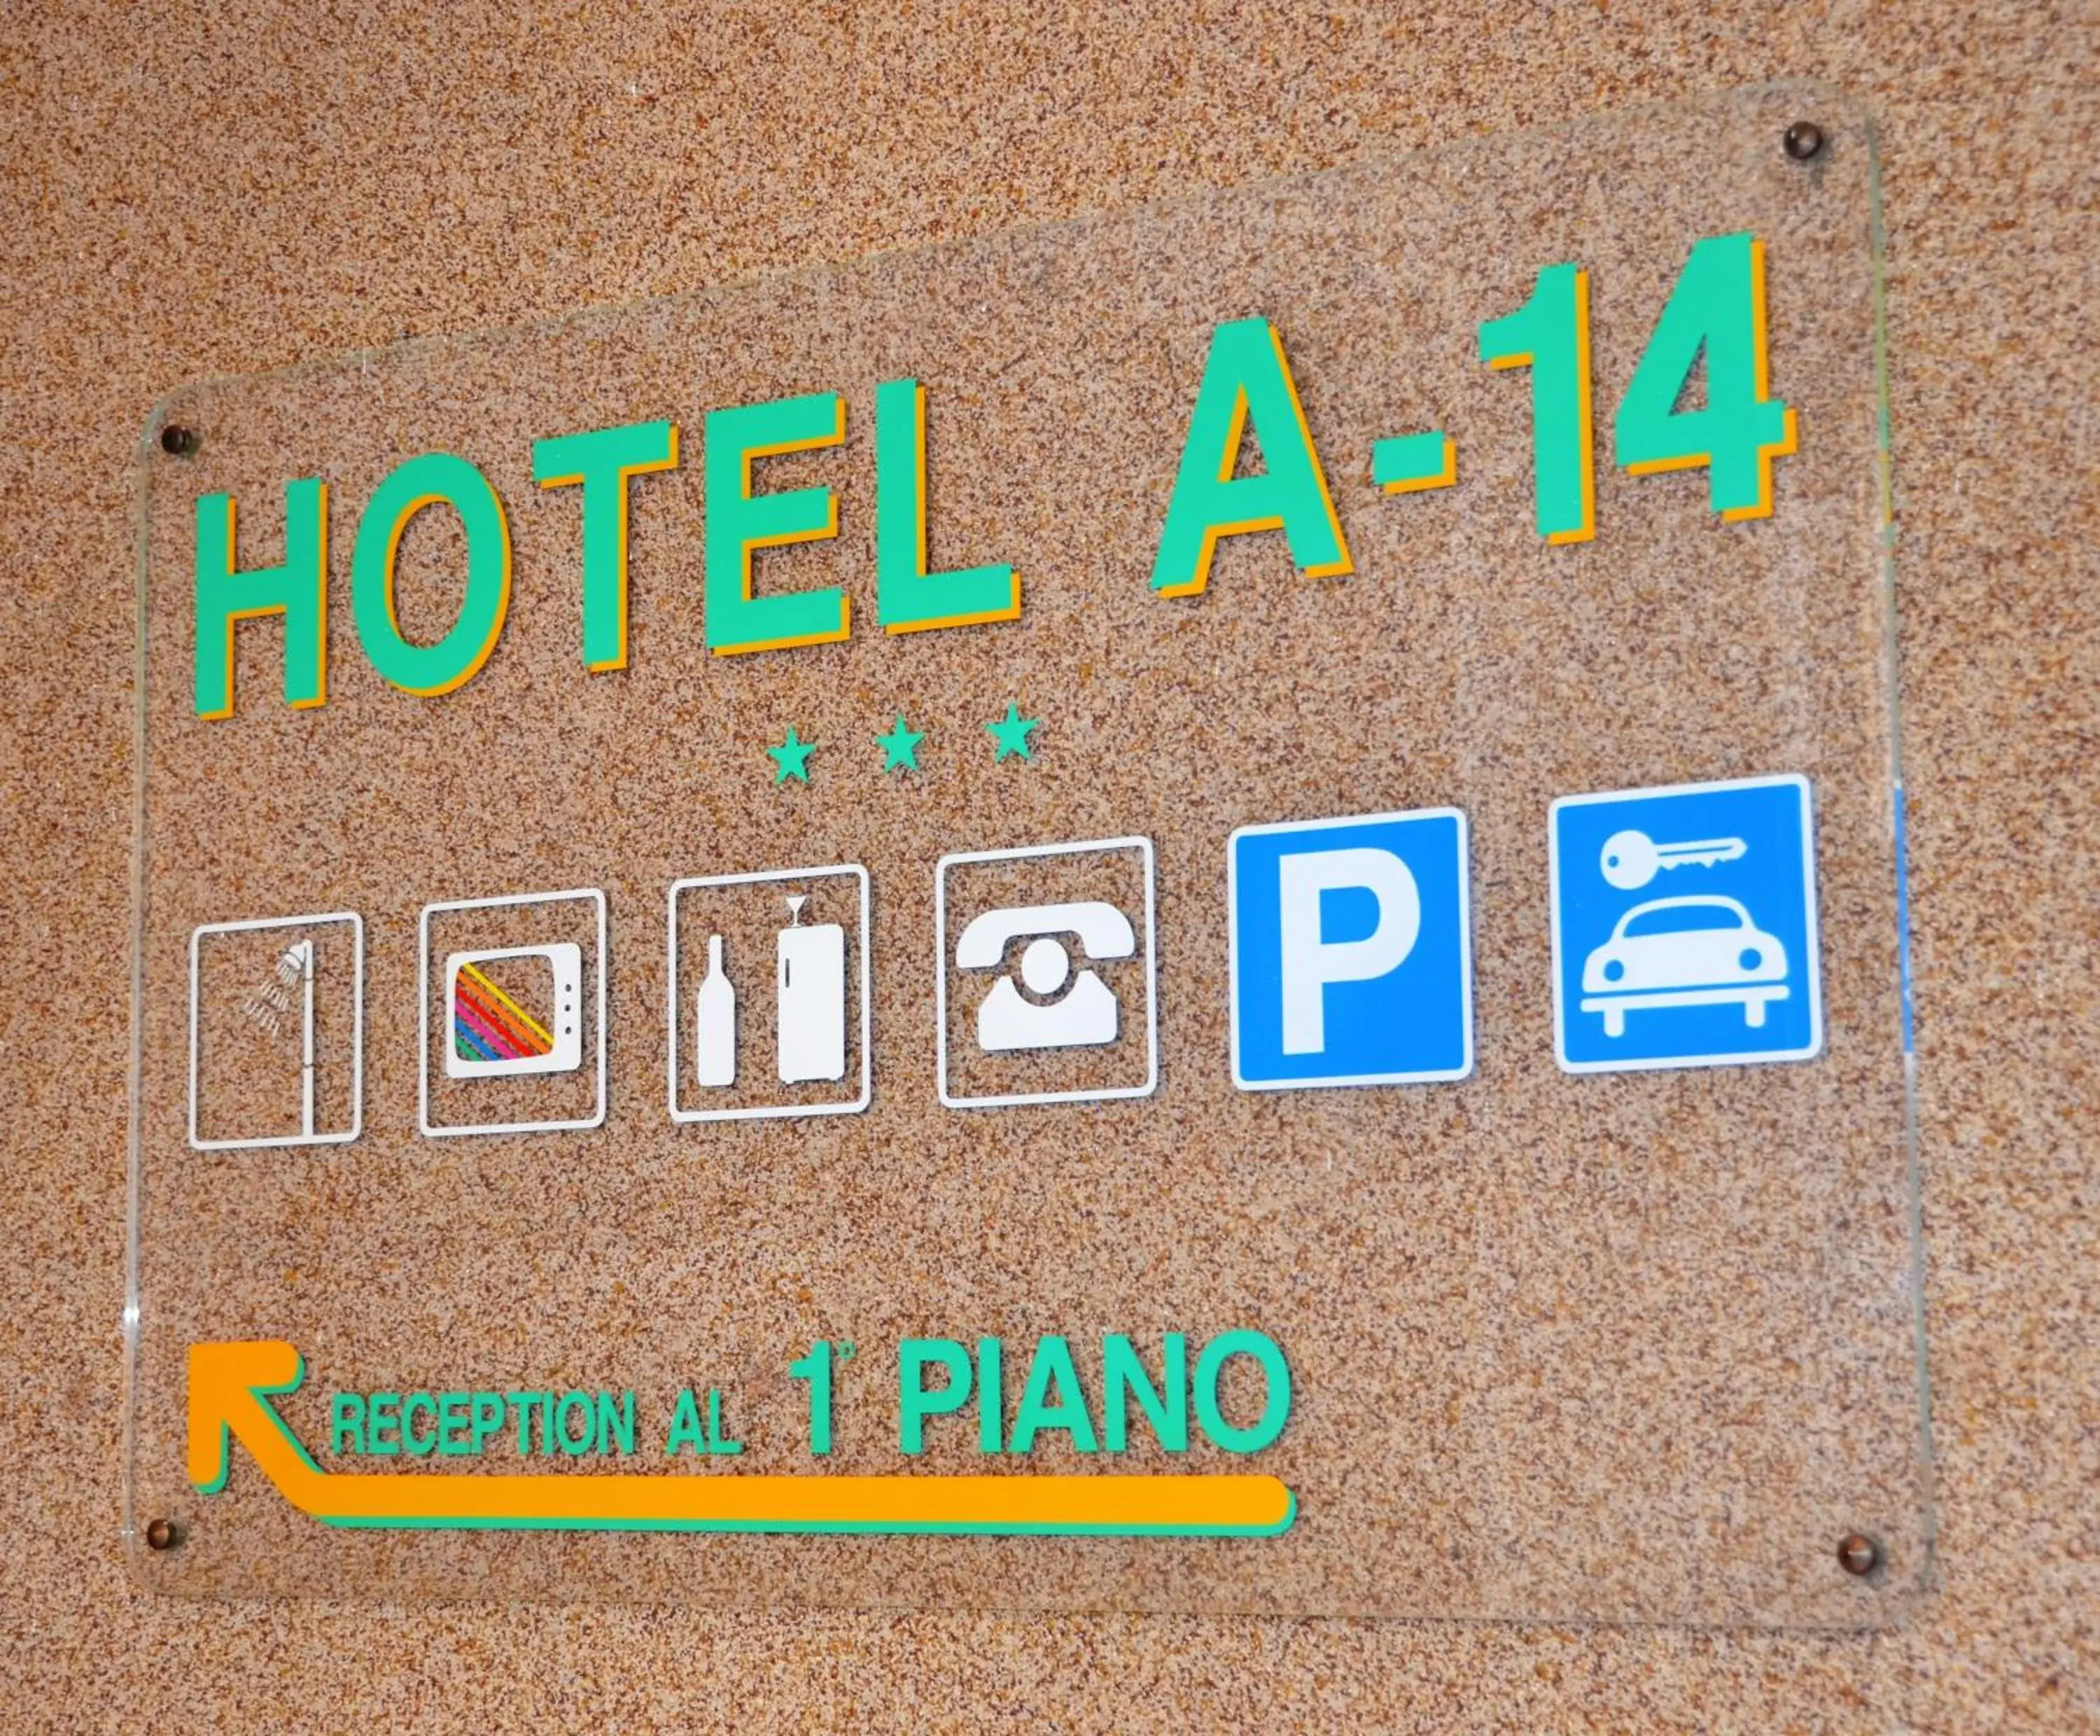 Facade/entrance in Hotel A-14